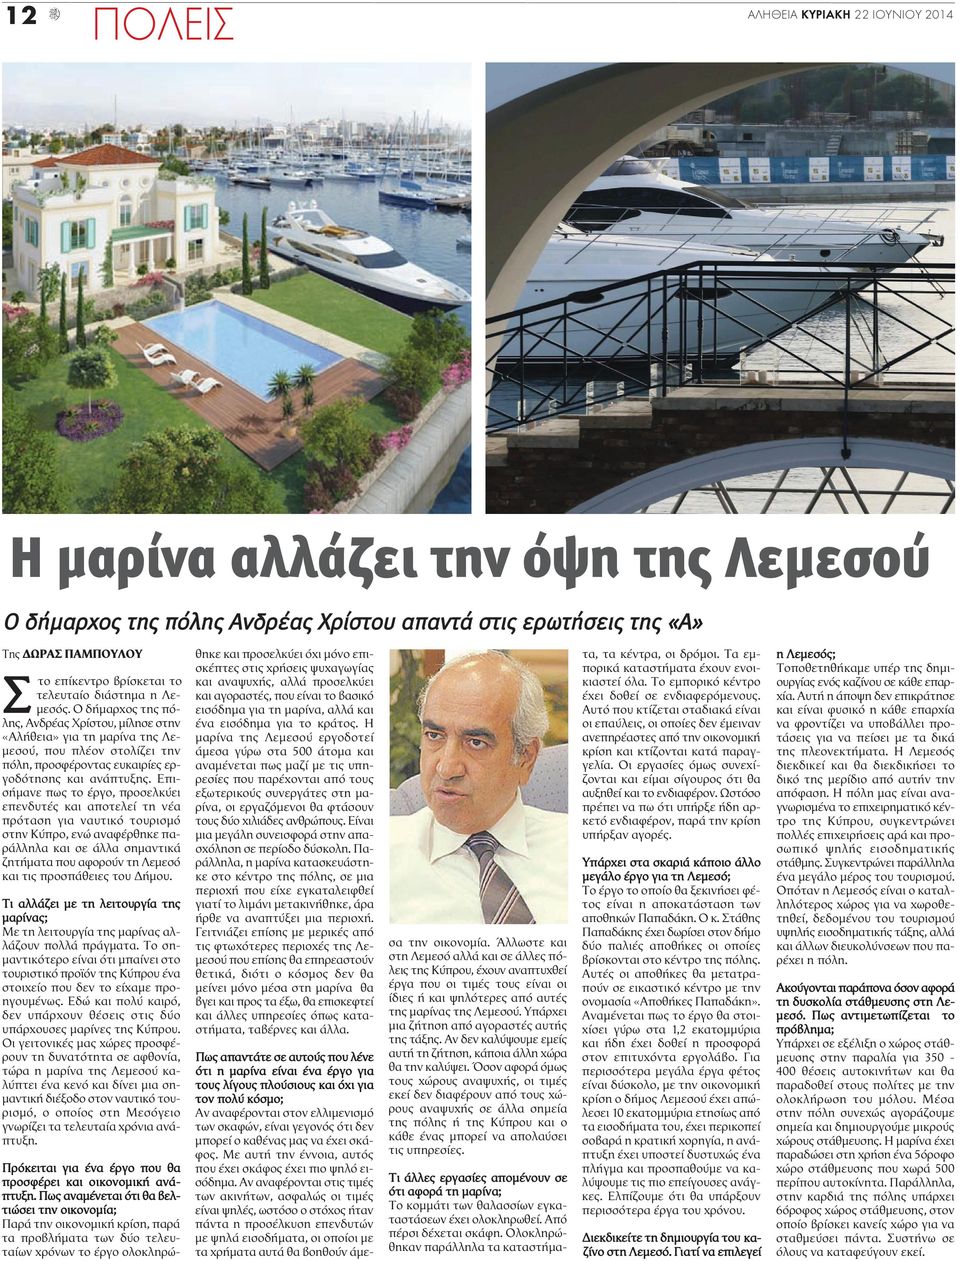 Επισήμανε πως το έργο, προσελκύει επενδυτές και αποτελεί τη νέα πρόταση για ναυτικό τουρισμό στην Κύπρο, ενώ αναφέρθηκε παράλληλα και σε άλλα σημαντικά ζητήματα που αφορούν τη Λεμεσό και τις